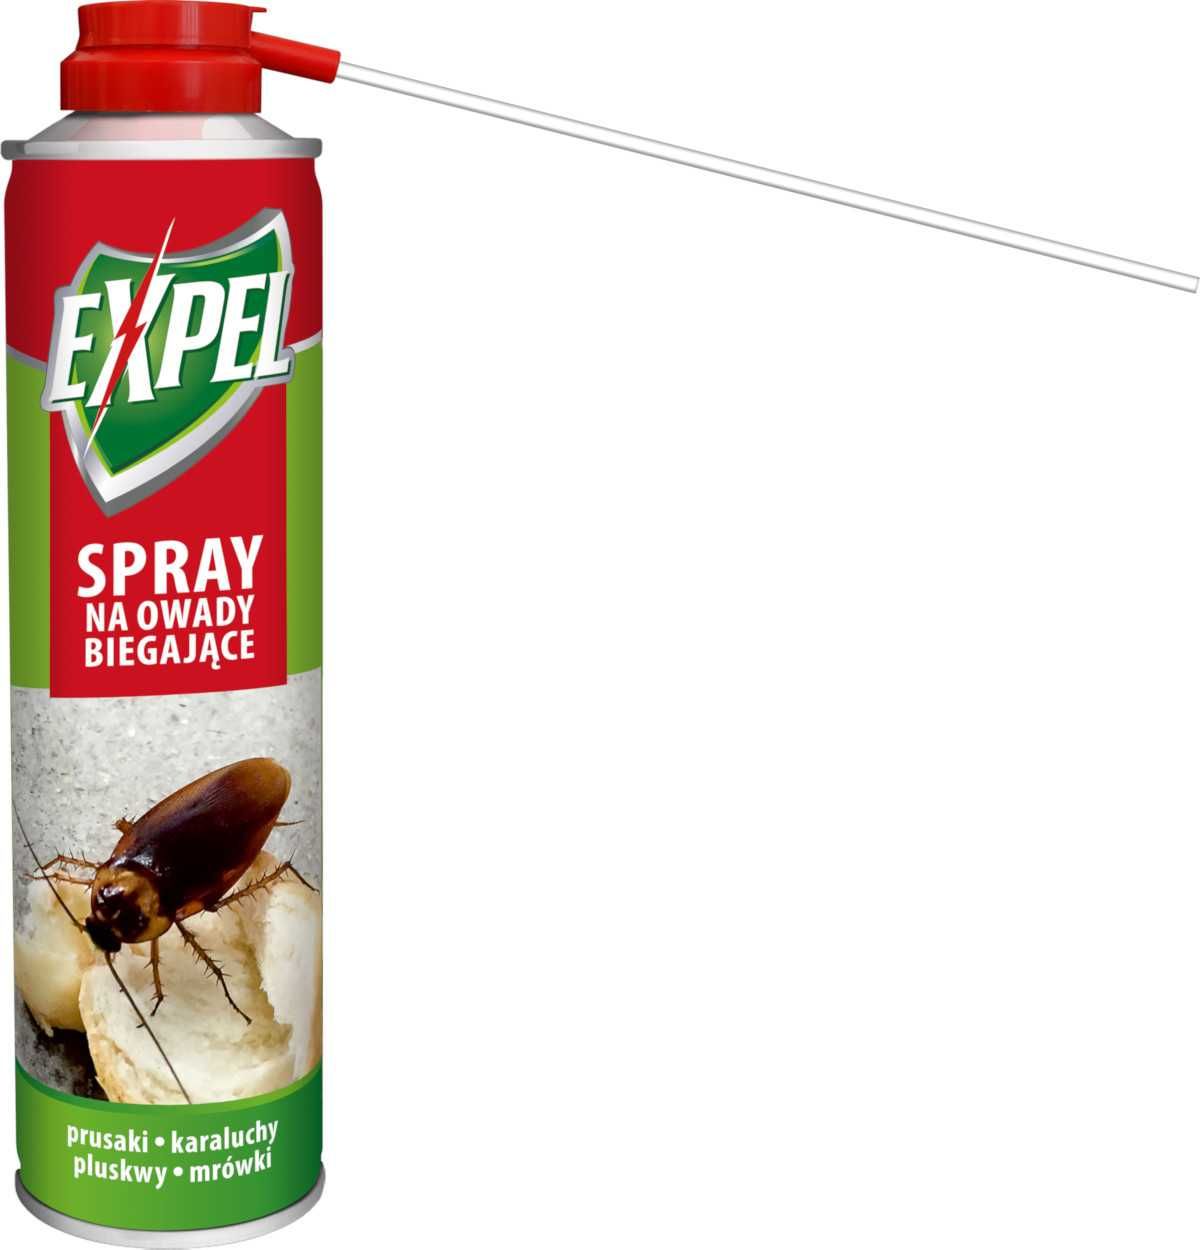 Expel spray na owady biegające ( karaluchy, srebrzyli, mrówki )